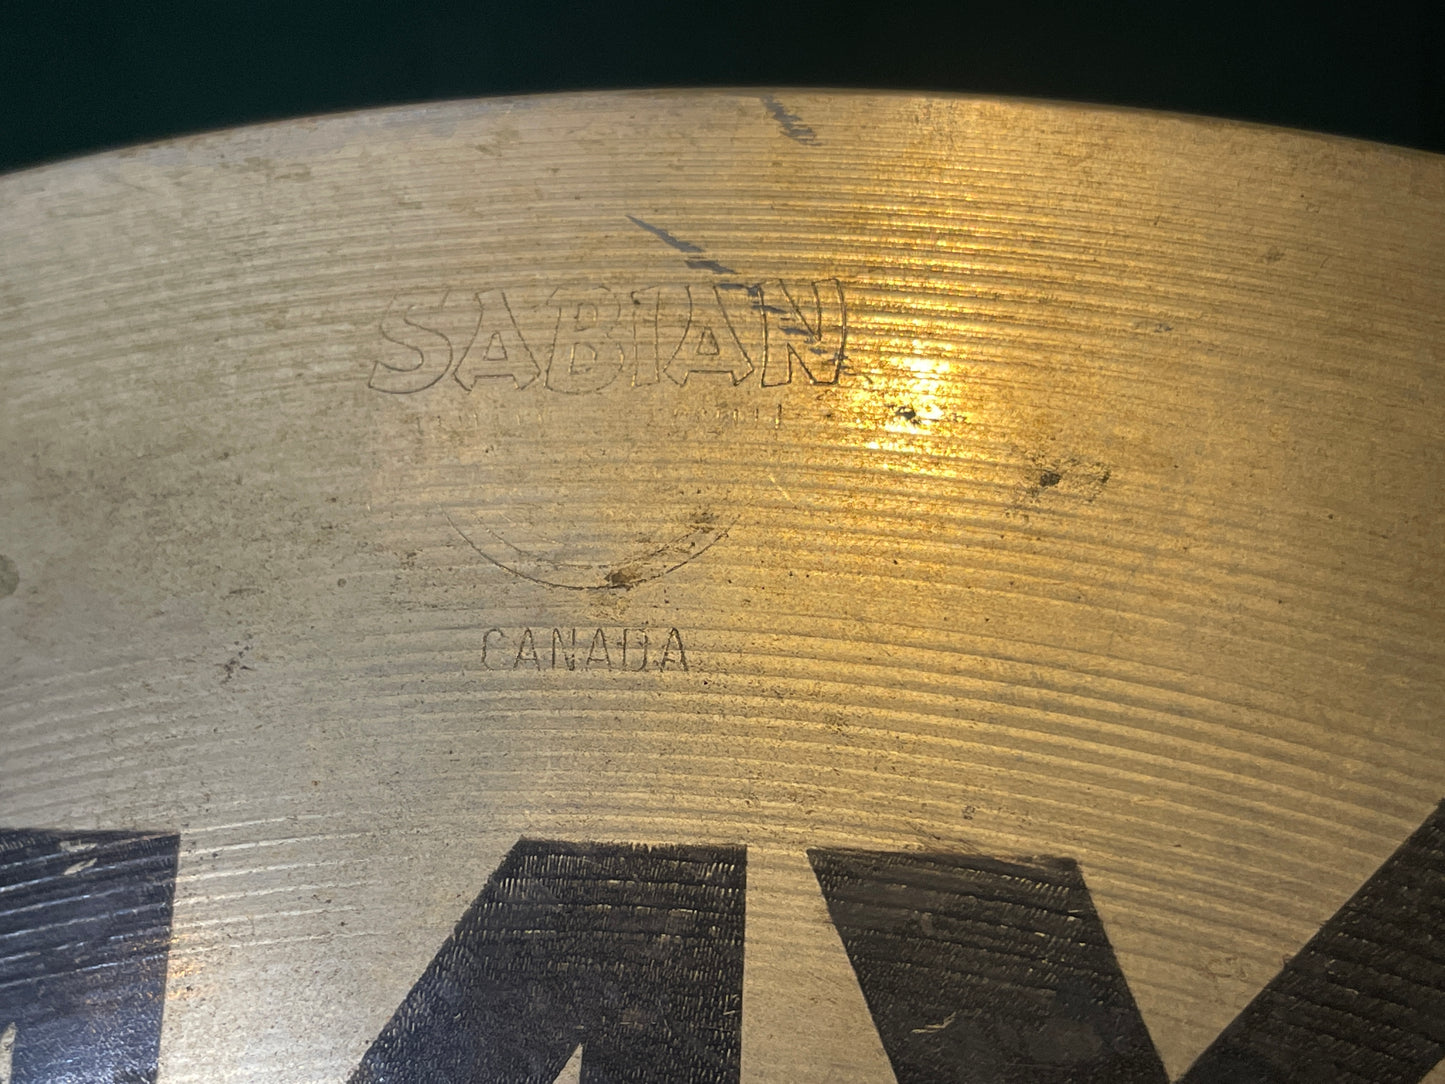 15" Sabian AAX Dark Crash Cymbal 890g